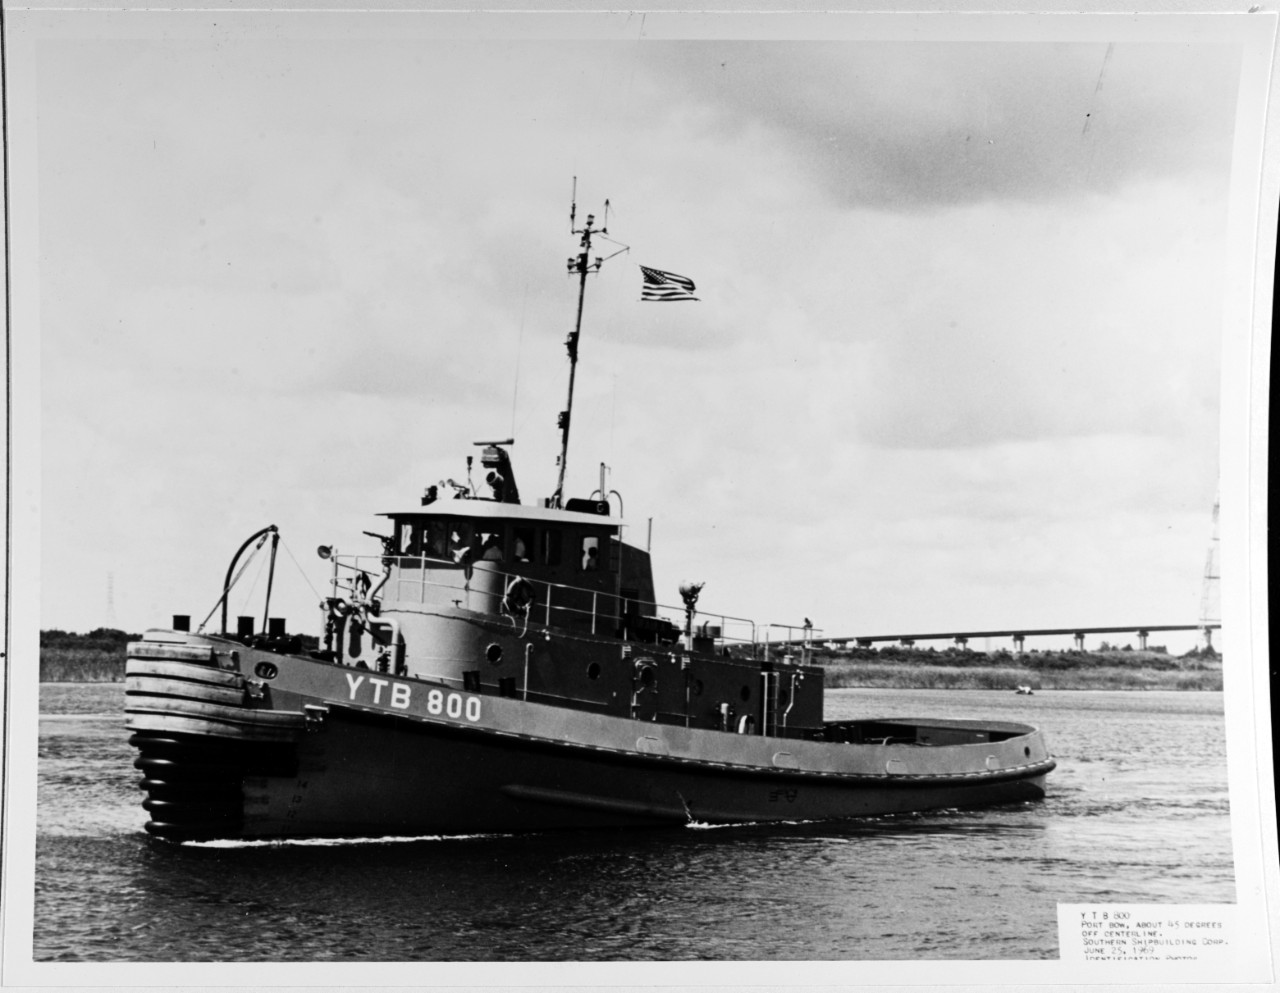 USS EUFAULA (YTB-800)